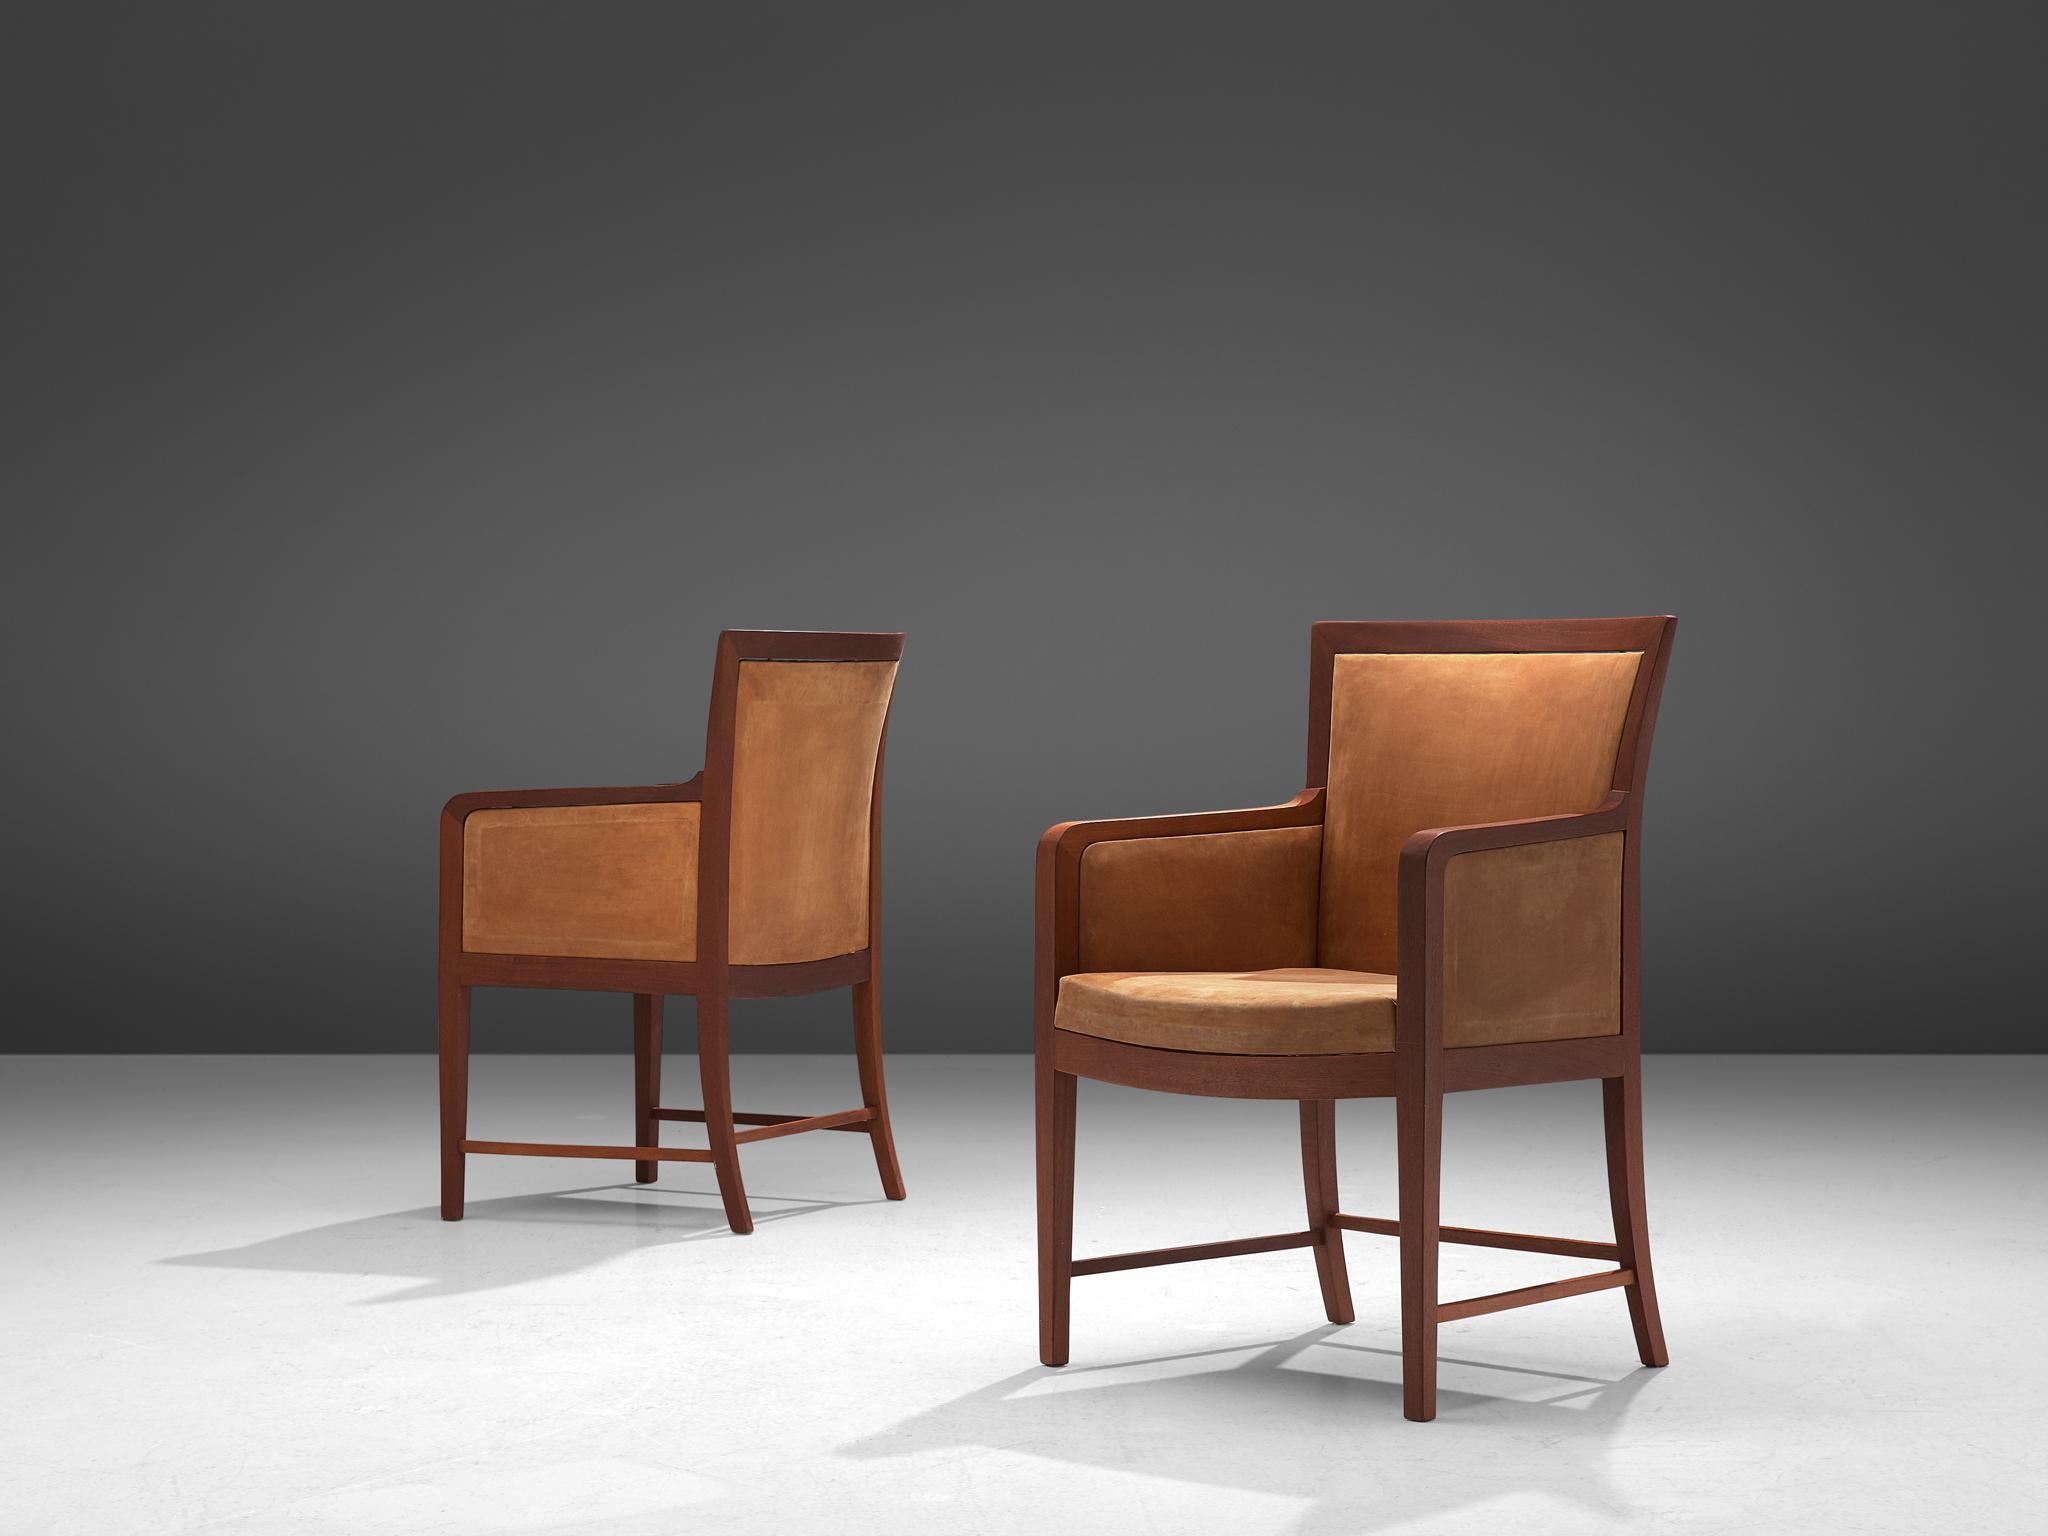 Kaj Gottlob pour Rud Rasmussen, paire de chaises longues, cuir et acajou, Danemark, années 1930

Cet élégant ensemble de fauteuils est conçu par Kaj Gottlob et fabriqué par Rud Rasmussen. Caractérisées par la simplicité, les chaises sont exécutées